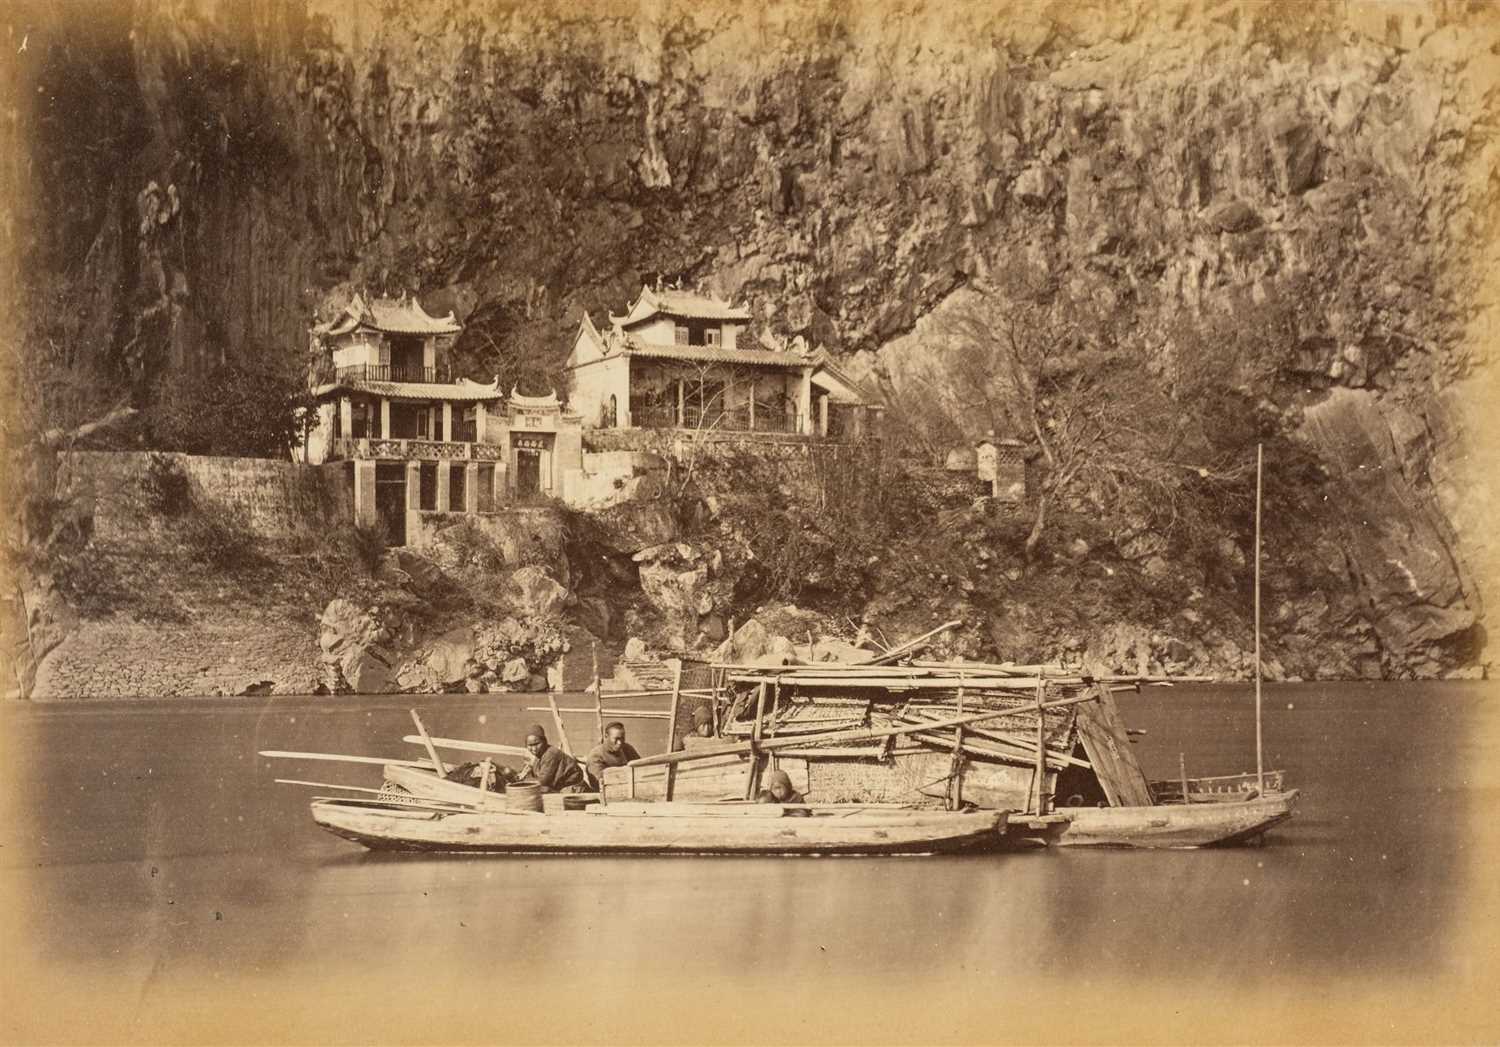 38 - Thomson (John). Views on the North River, 1st edition, Hongkong: Noronha & Sons, Printers, 1870,